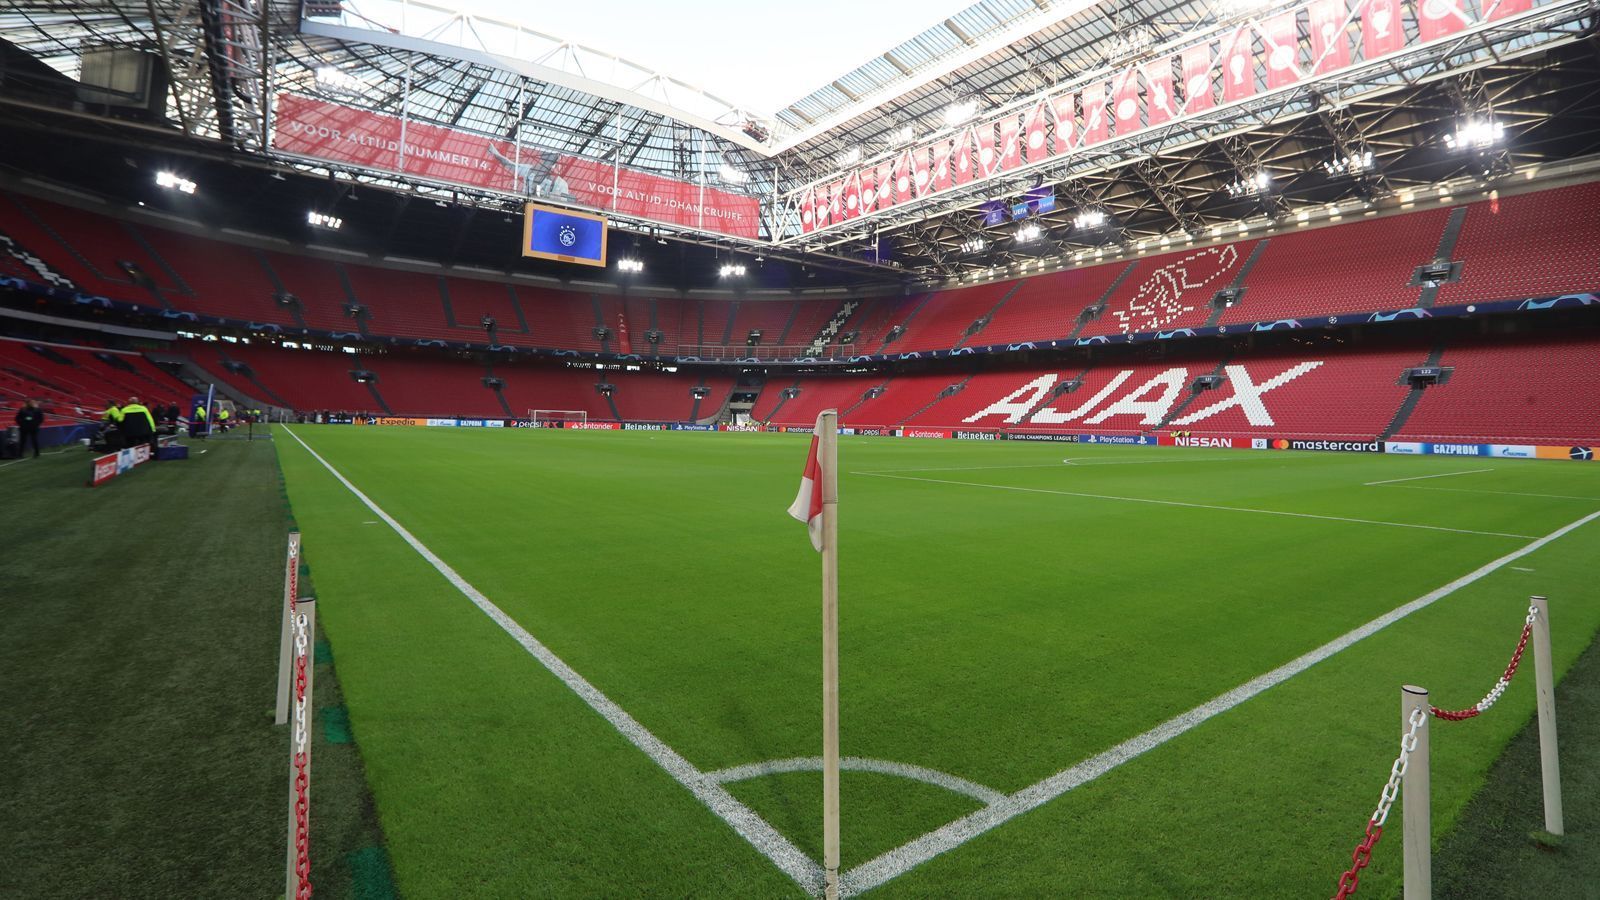 
                <strong>Amsterdam - Johann-Cruyff-Arena</strong><br>
                &#x2022; Kapazität: 54.000 - <br>&#x2022; Auslastung: ca. 33 Prozent (rund 16.000) - Kapazität könnte noch ansteigen<br>
              